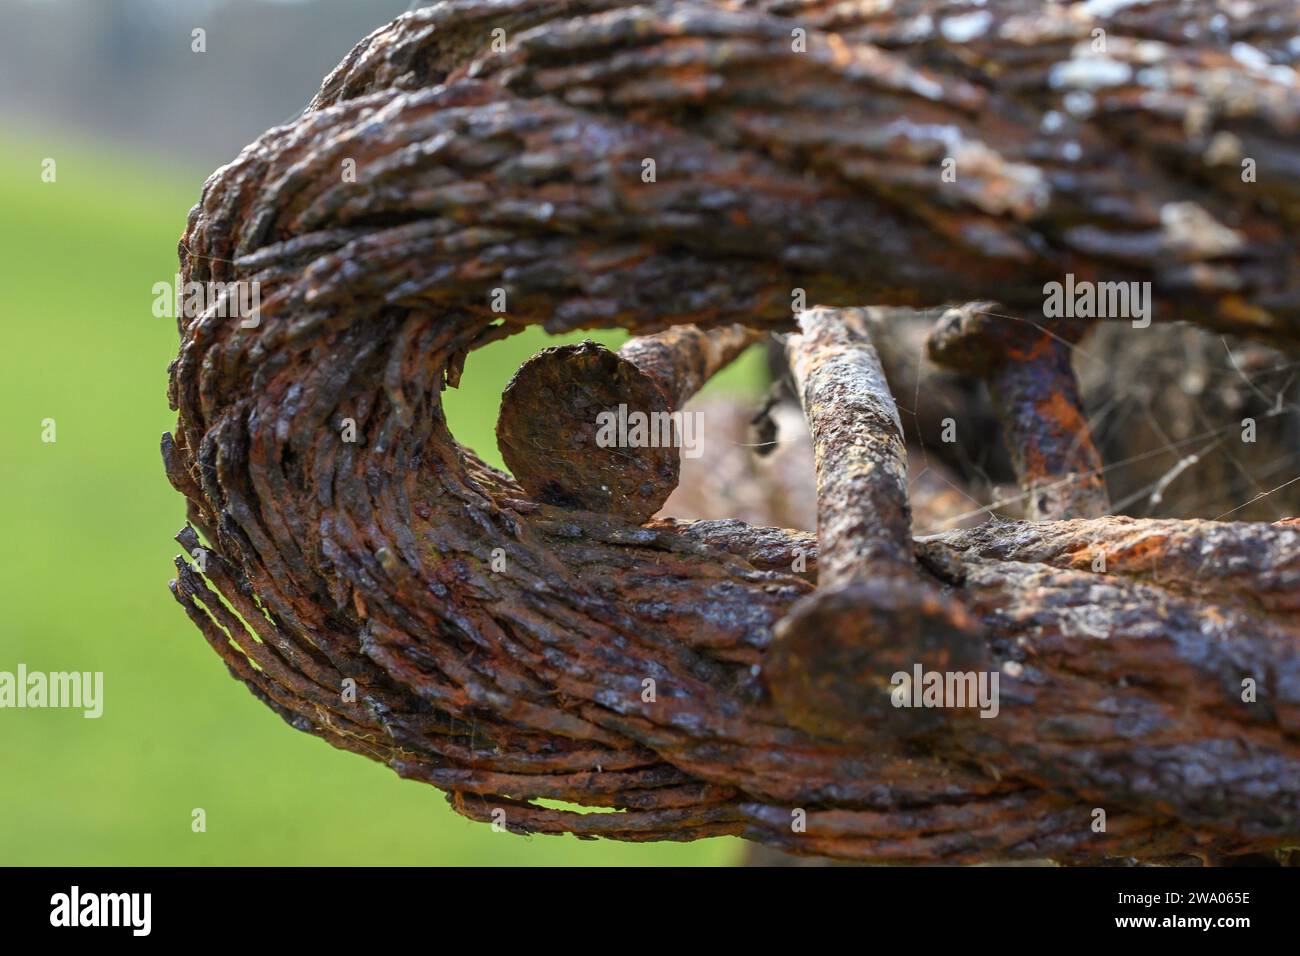 primo piano della testa di due chiodi in acciaio molto arrugginiti attorno a un vecchio cavo in acciaio sfilacciato, grasso e arrugginito. Foto Stock